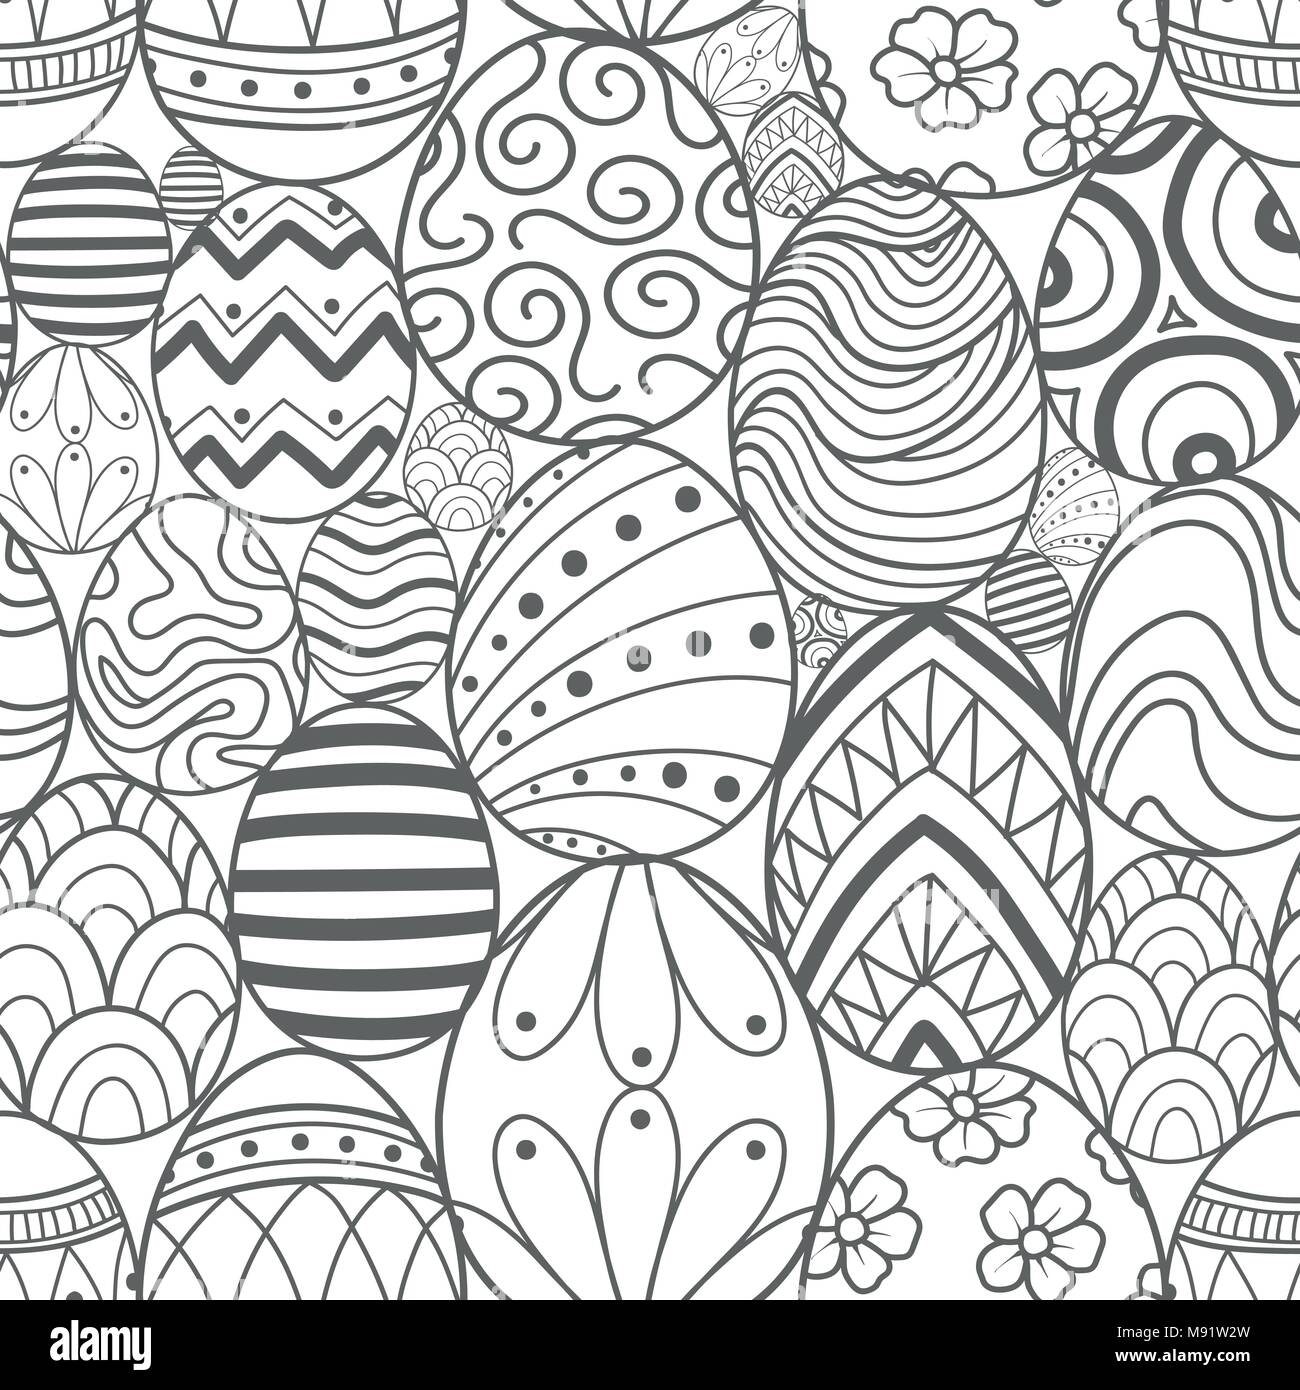 Easter eggs in gray outline random on white background. Cute hand drawn seamless pattern design for Easter festival in vector illustration. Stock Vector